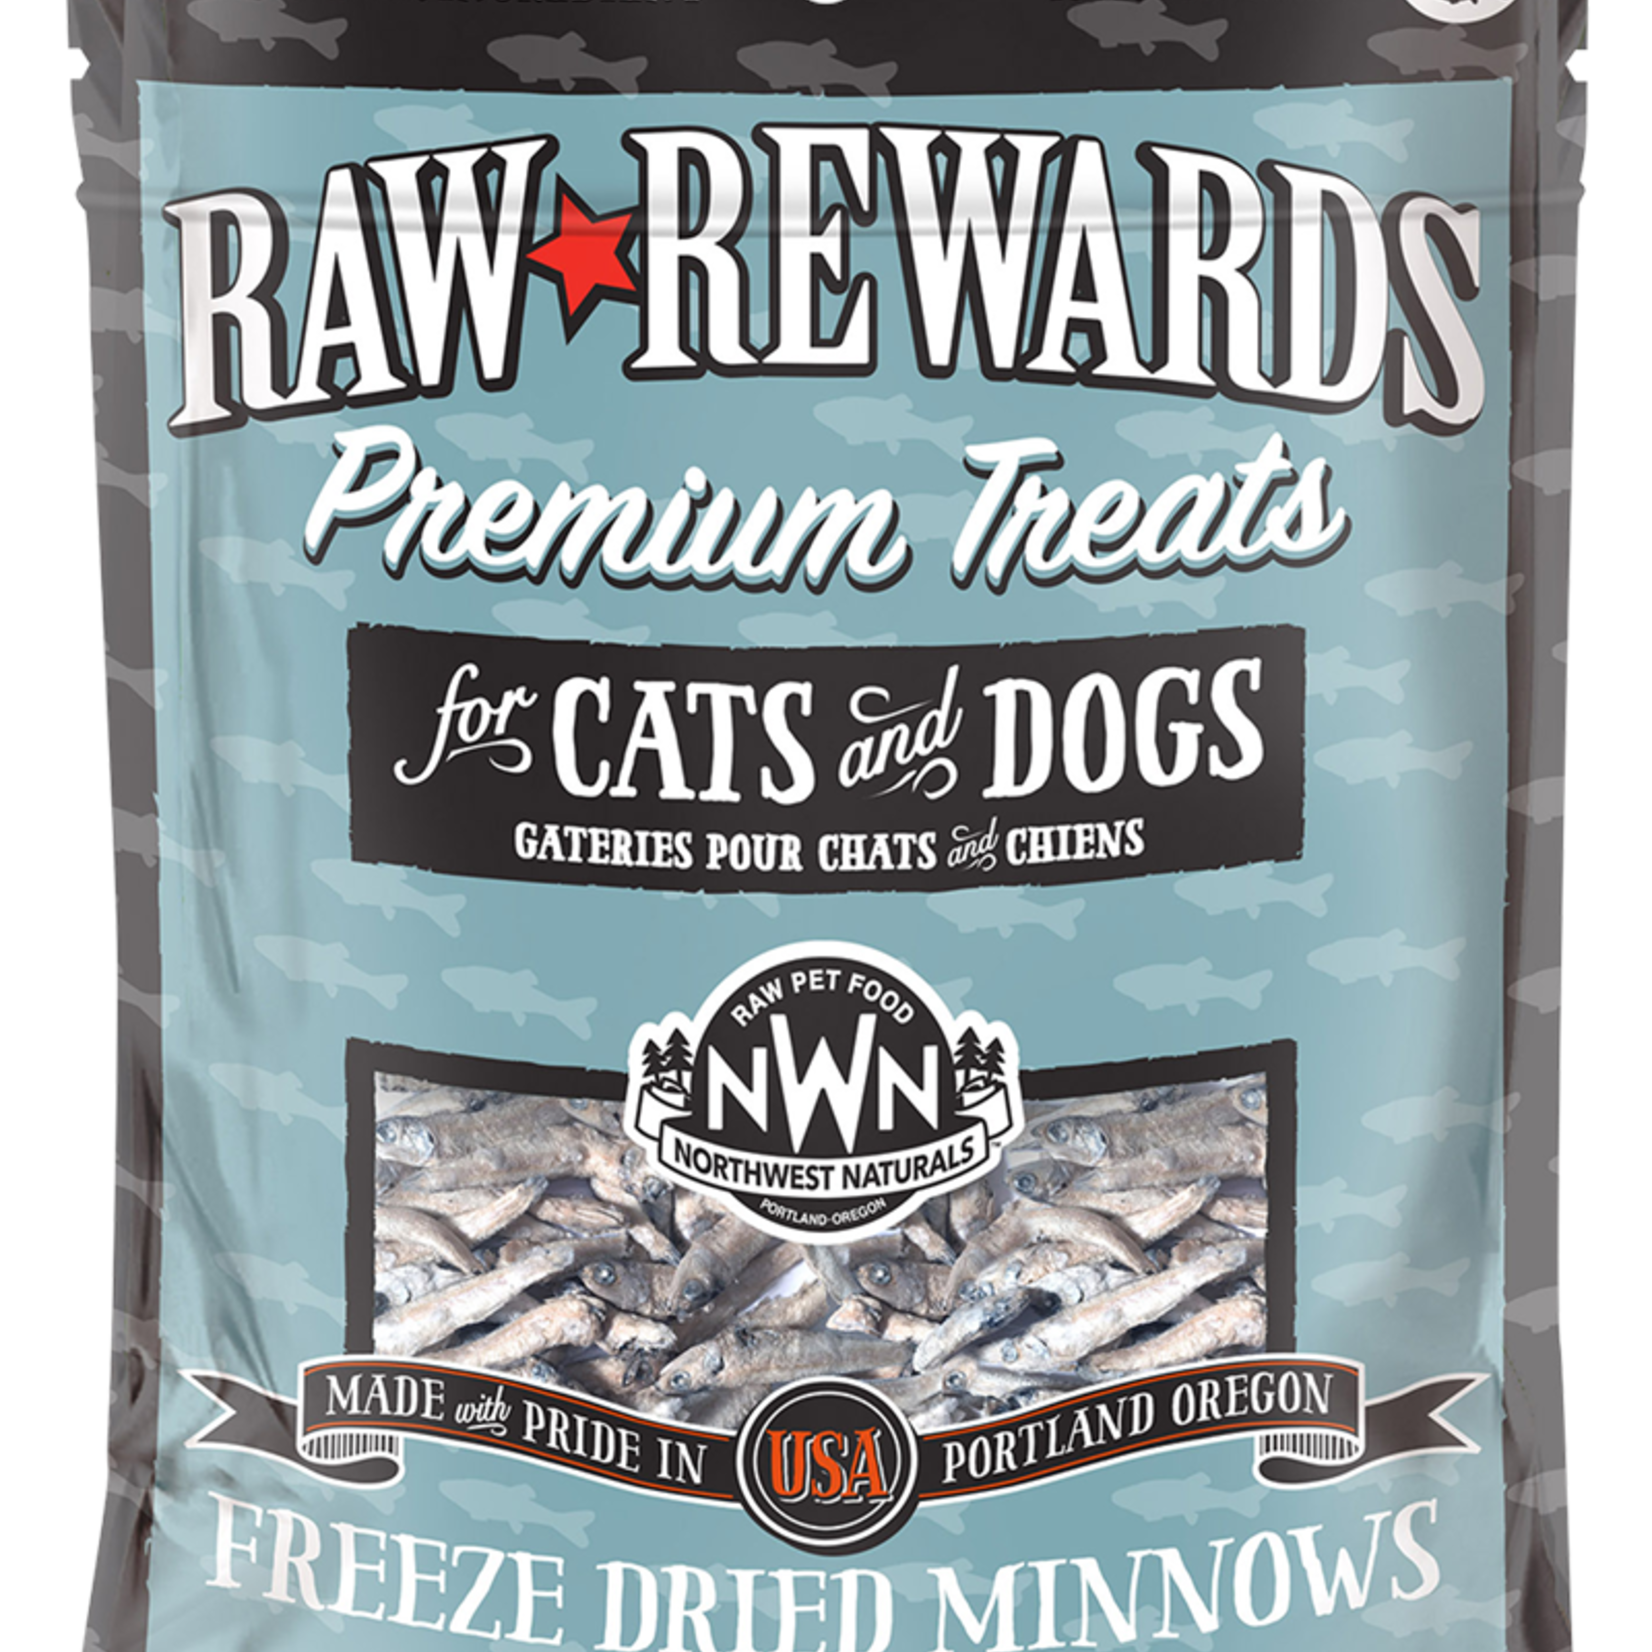 Northwest Naturals Northwest Naturals Freeze-dried Raw Rewards Minnows Treat 1 OZ